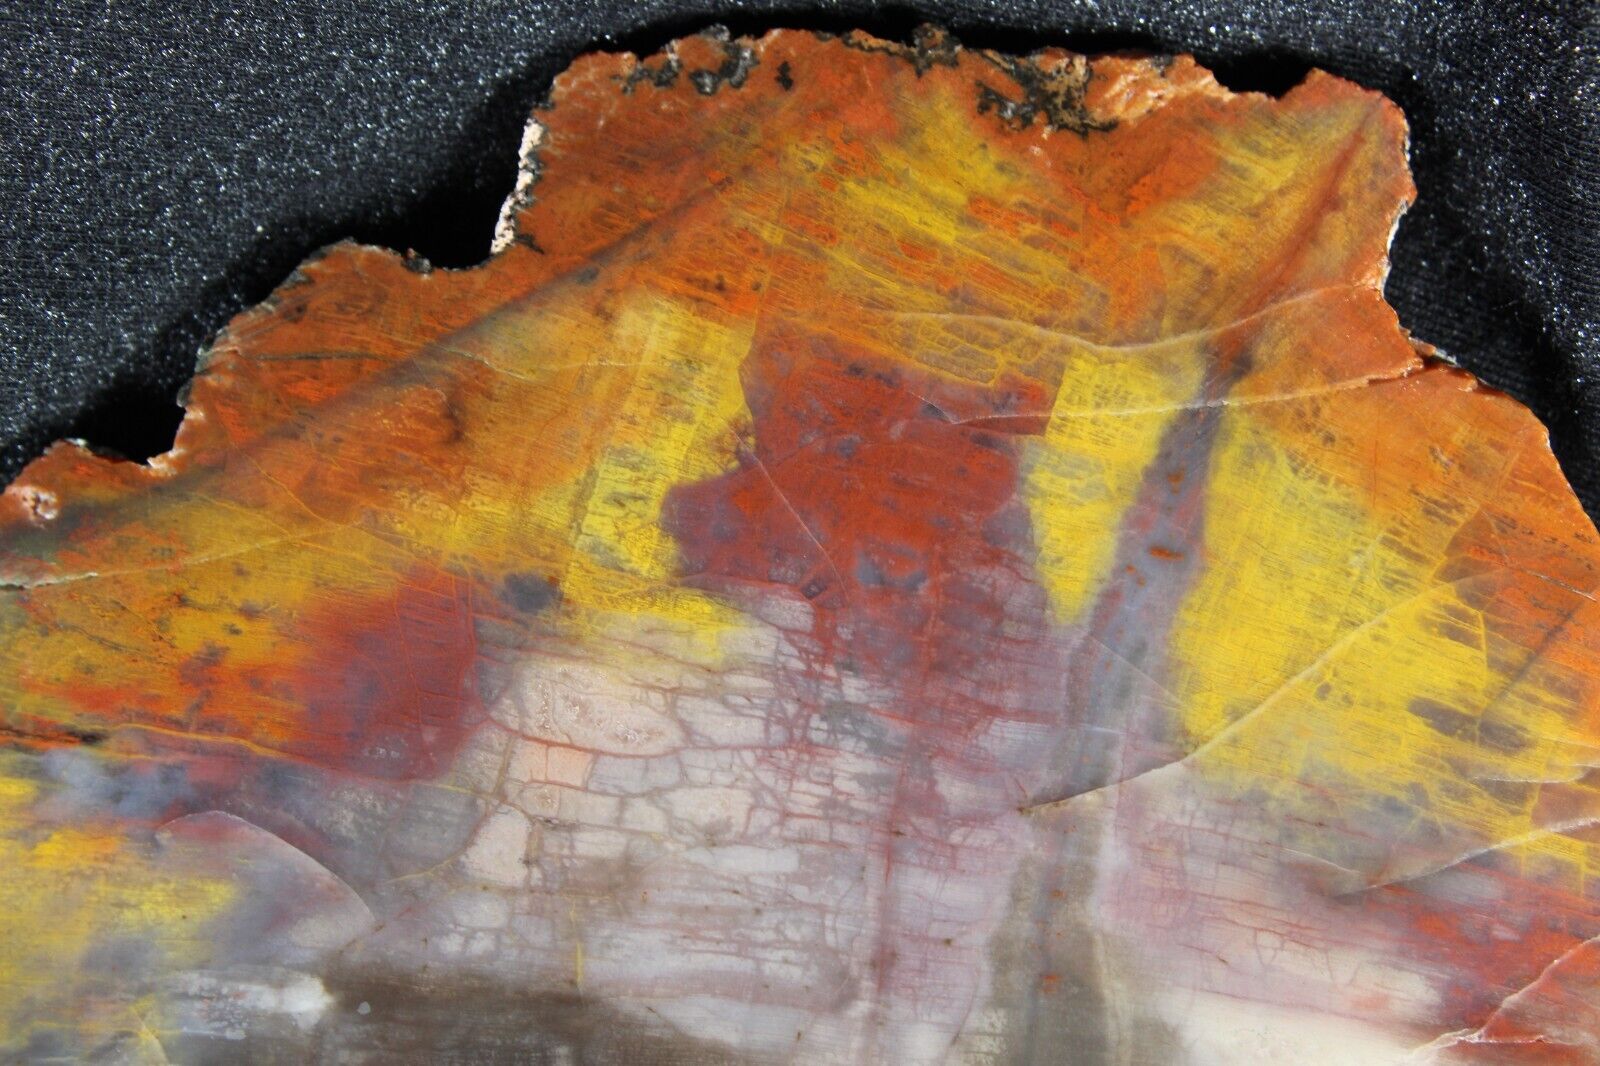 PJ:  Arizona Petrified Wood Slab - 1 Lb, I Oz - Colorrzzz 